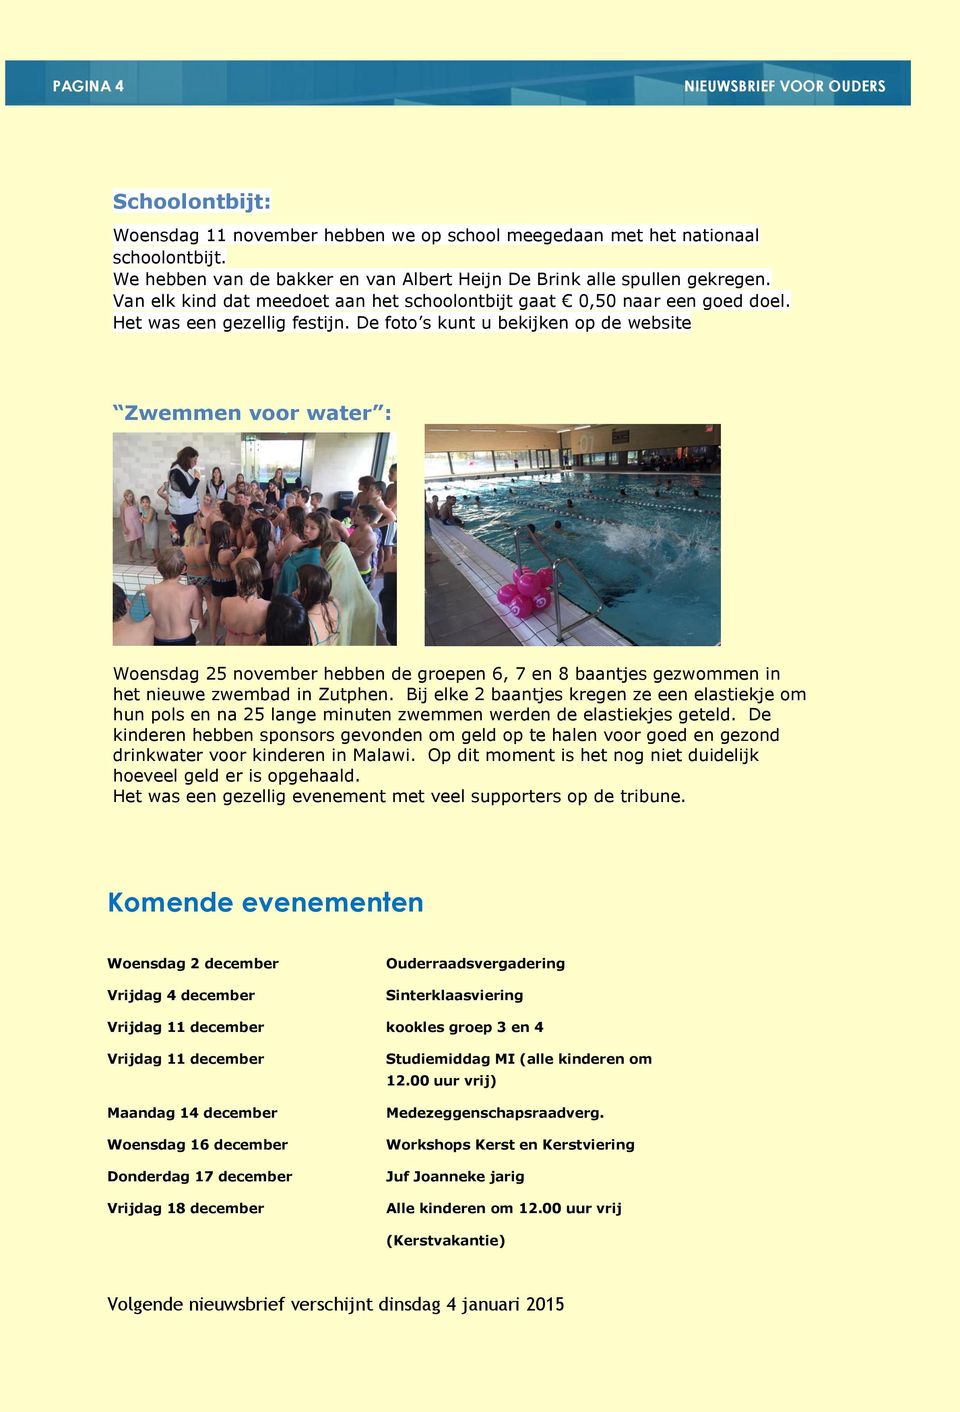 De foto s kunt u bekijken op de website Zwemmen voor water : Woensdag 25 november hebben de groepen 6, 7 en 8 baantjes gezwommen in het nieuwe zwembad in Zutphen.